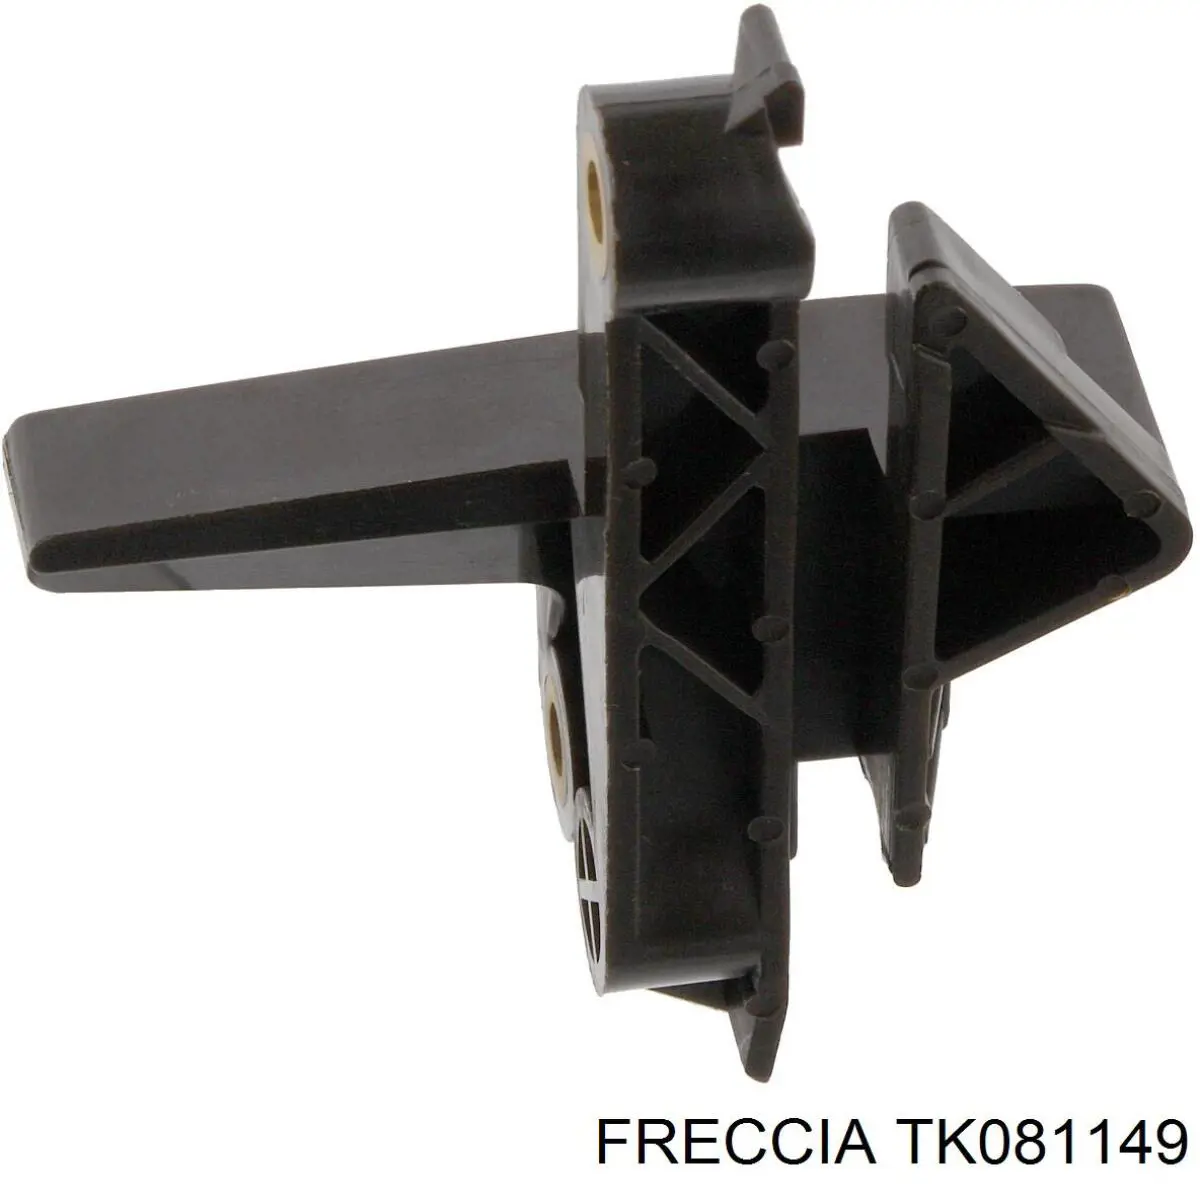 TK08-1149 Freccia cadena de distribución superior, kit